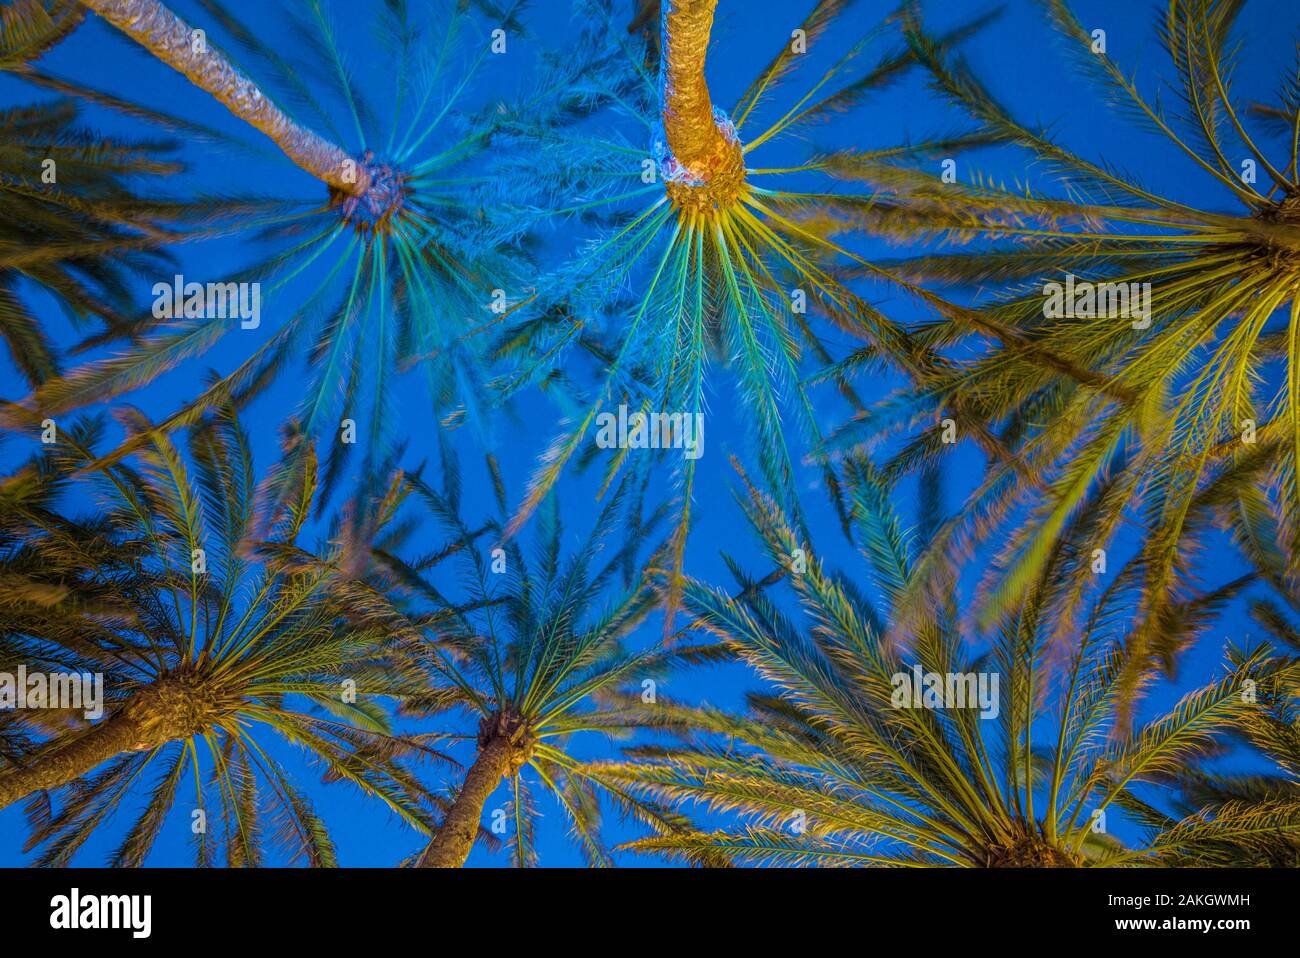 Spain, Canary Islands, Gran Canaria Island, Maspalomas, palm tree canopy Stock Photo